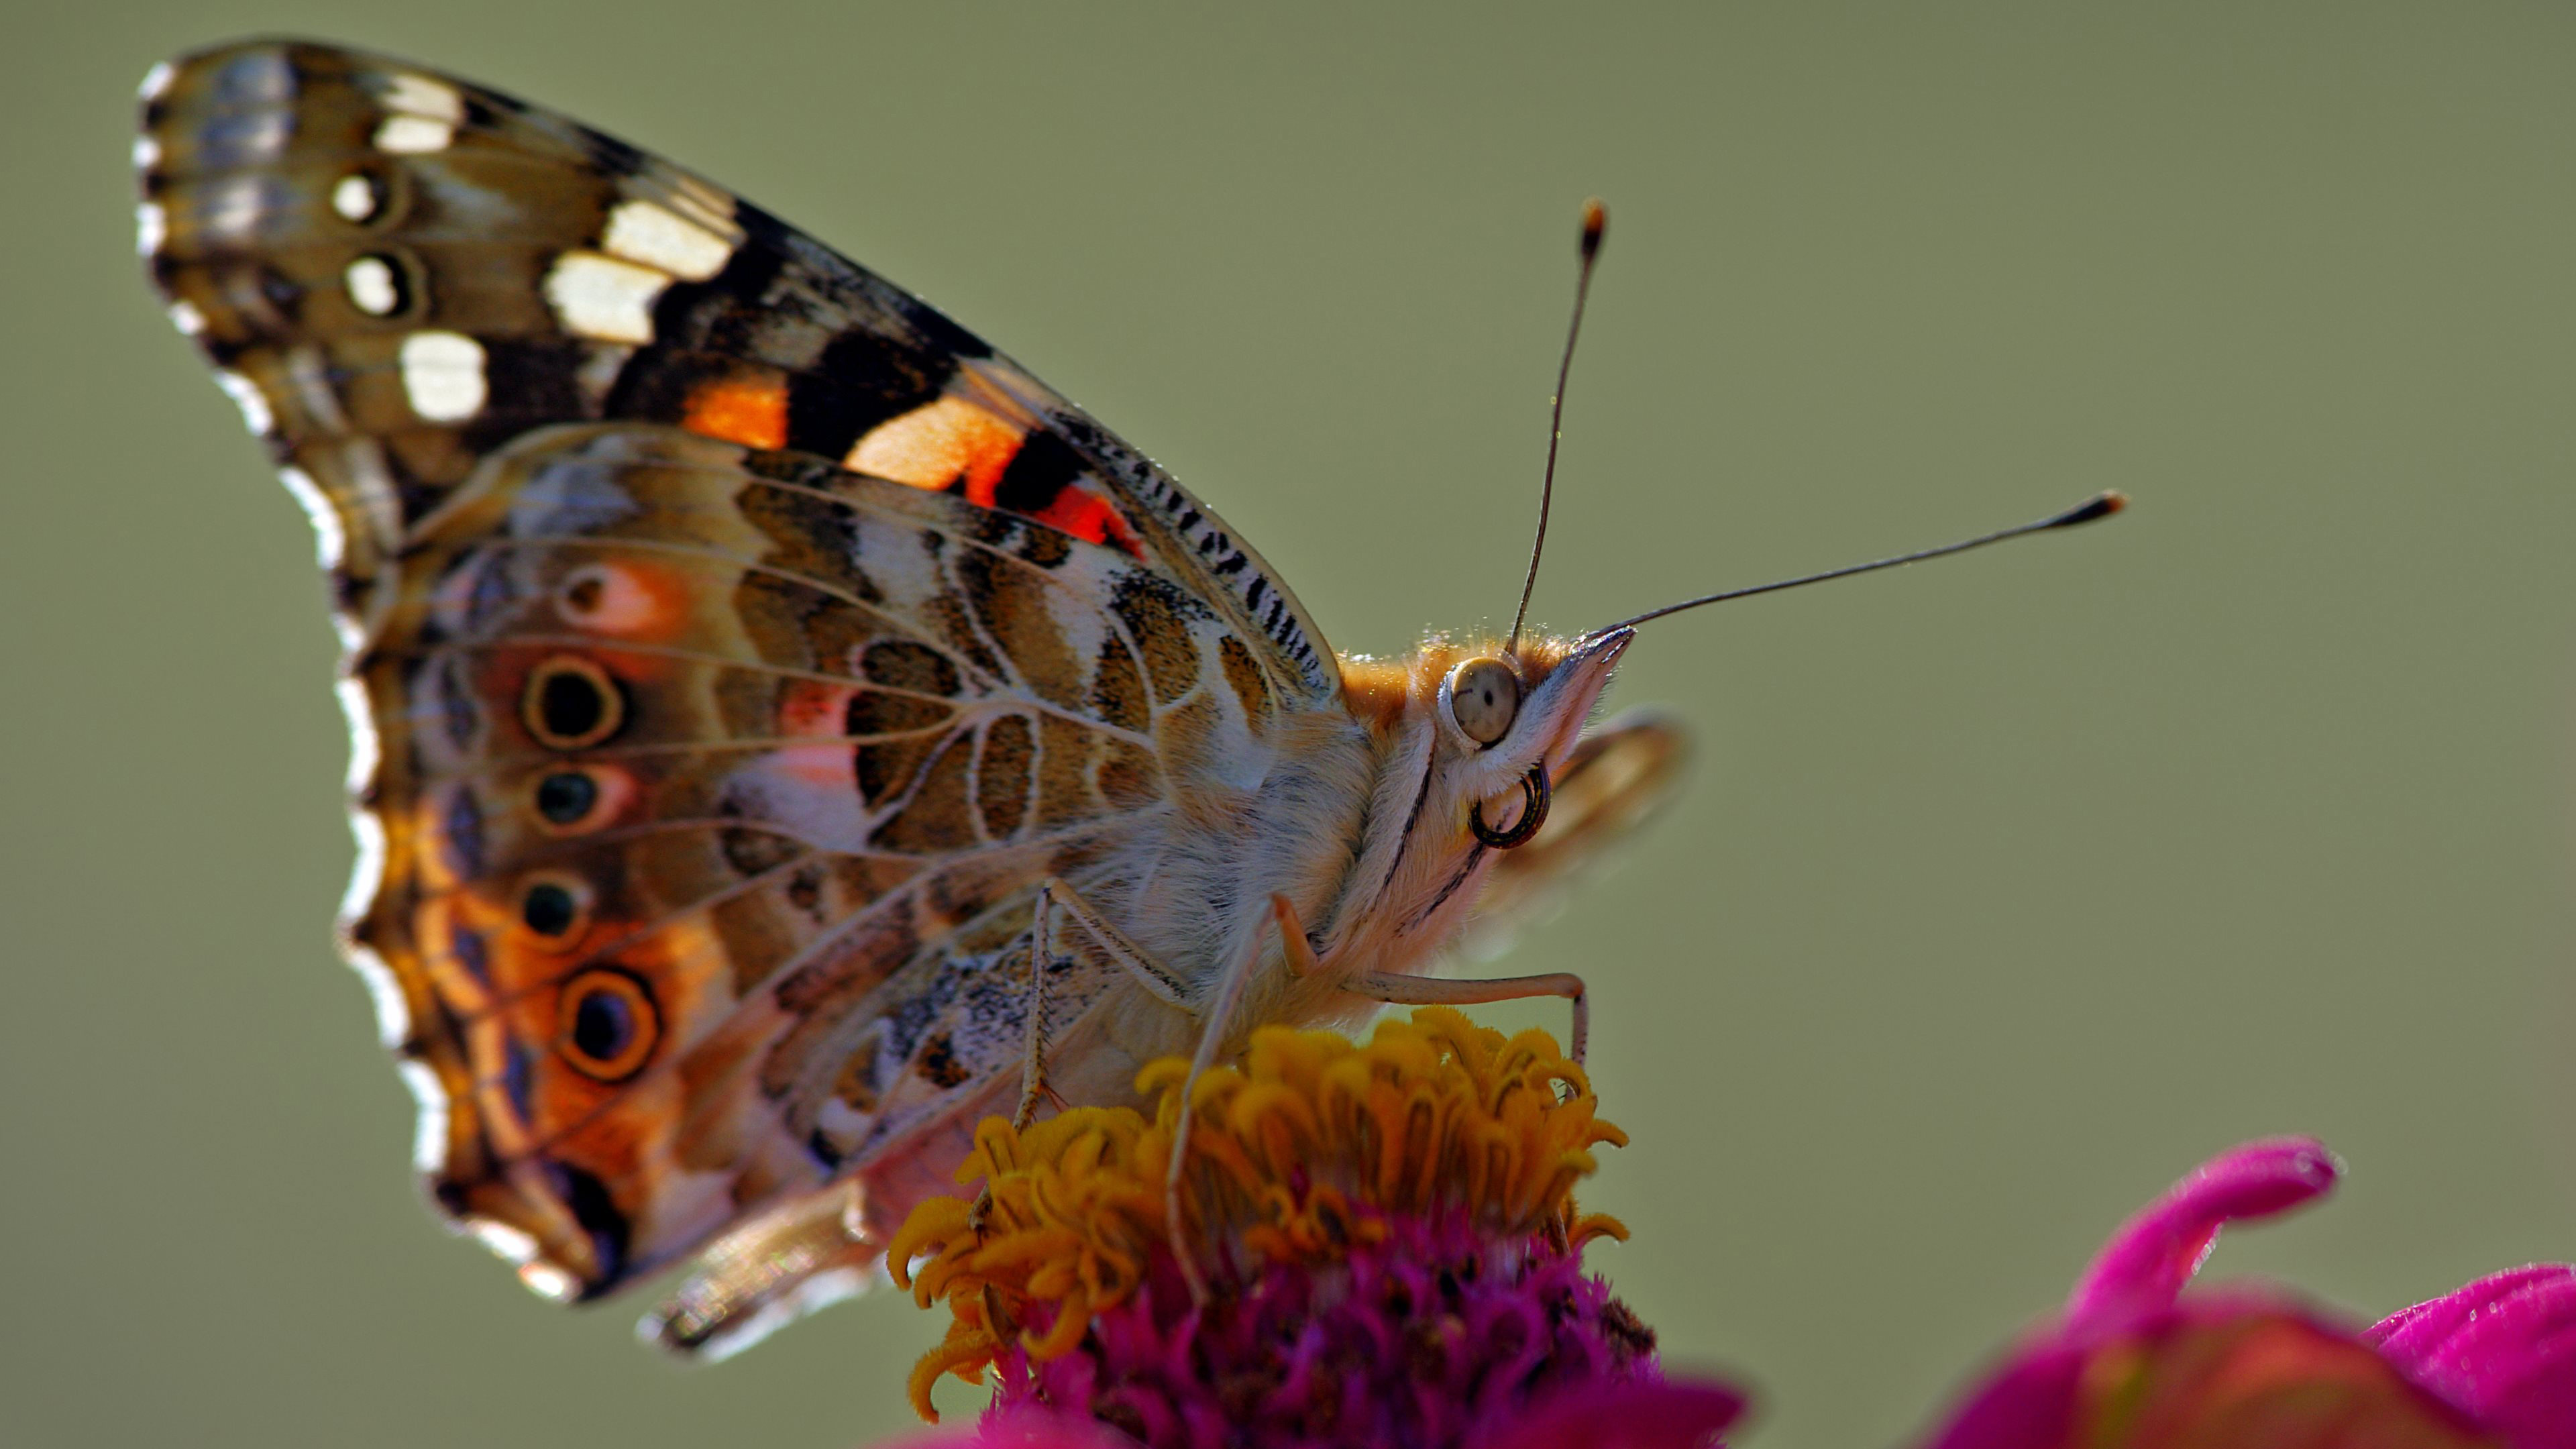 دانلود عکس فوق العاده قشنگ از پروانه بسیار زیبا 